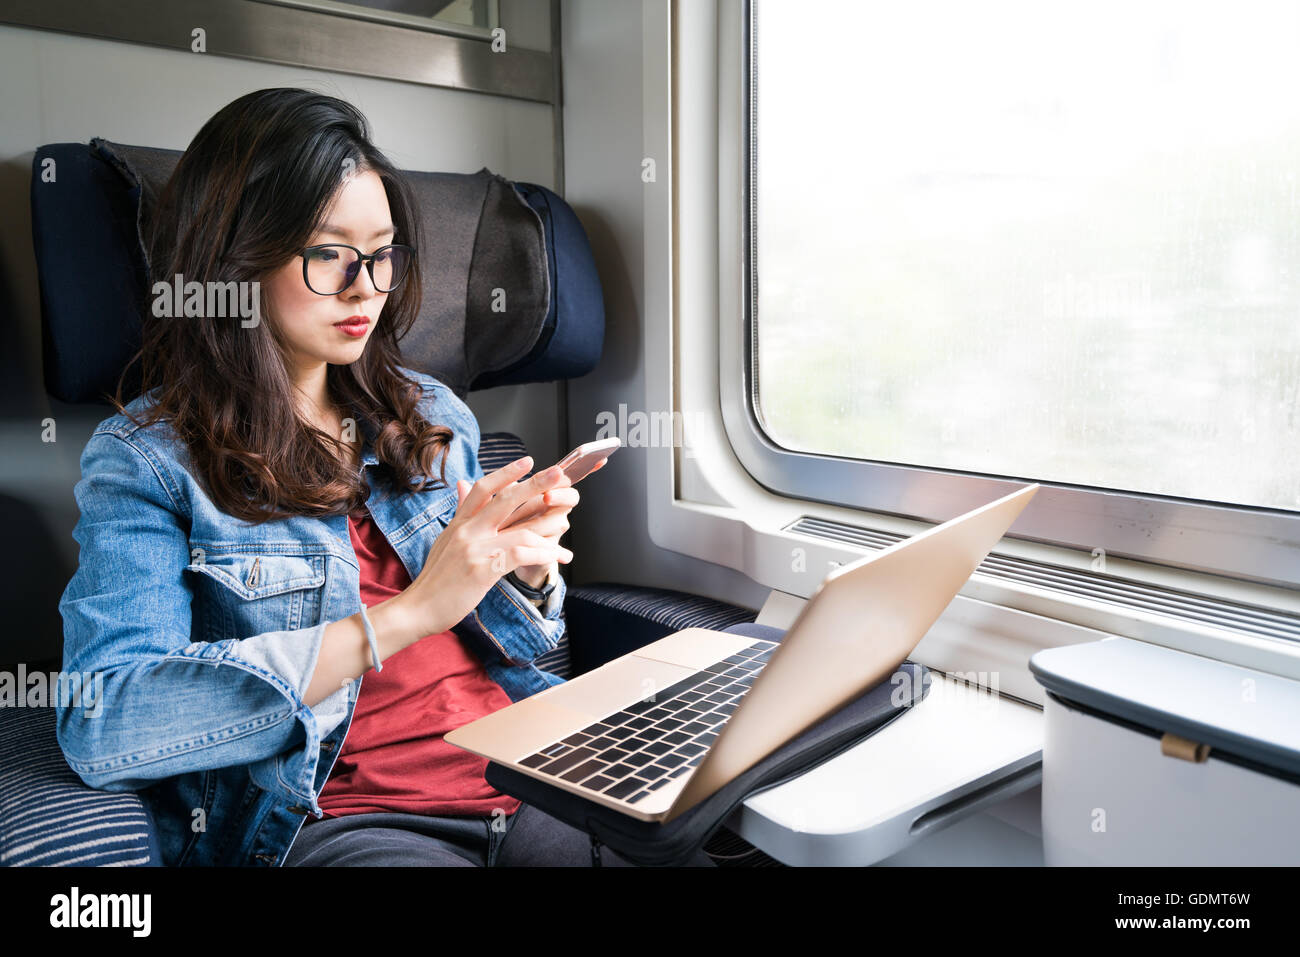 Süße Asiatin mit Smartphone und Laptop auf Zug, Textfreiraum auf Fenster, Business-Reisen oder Technologie-Konzept Stockfoto